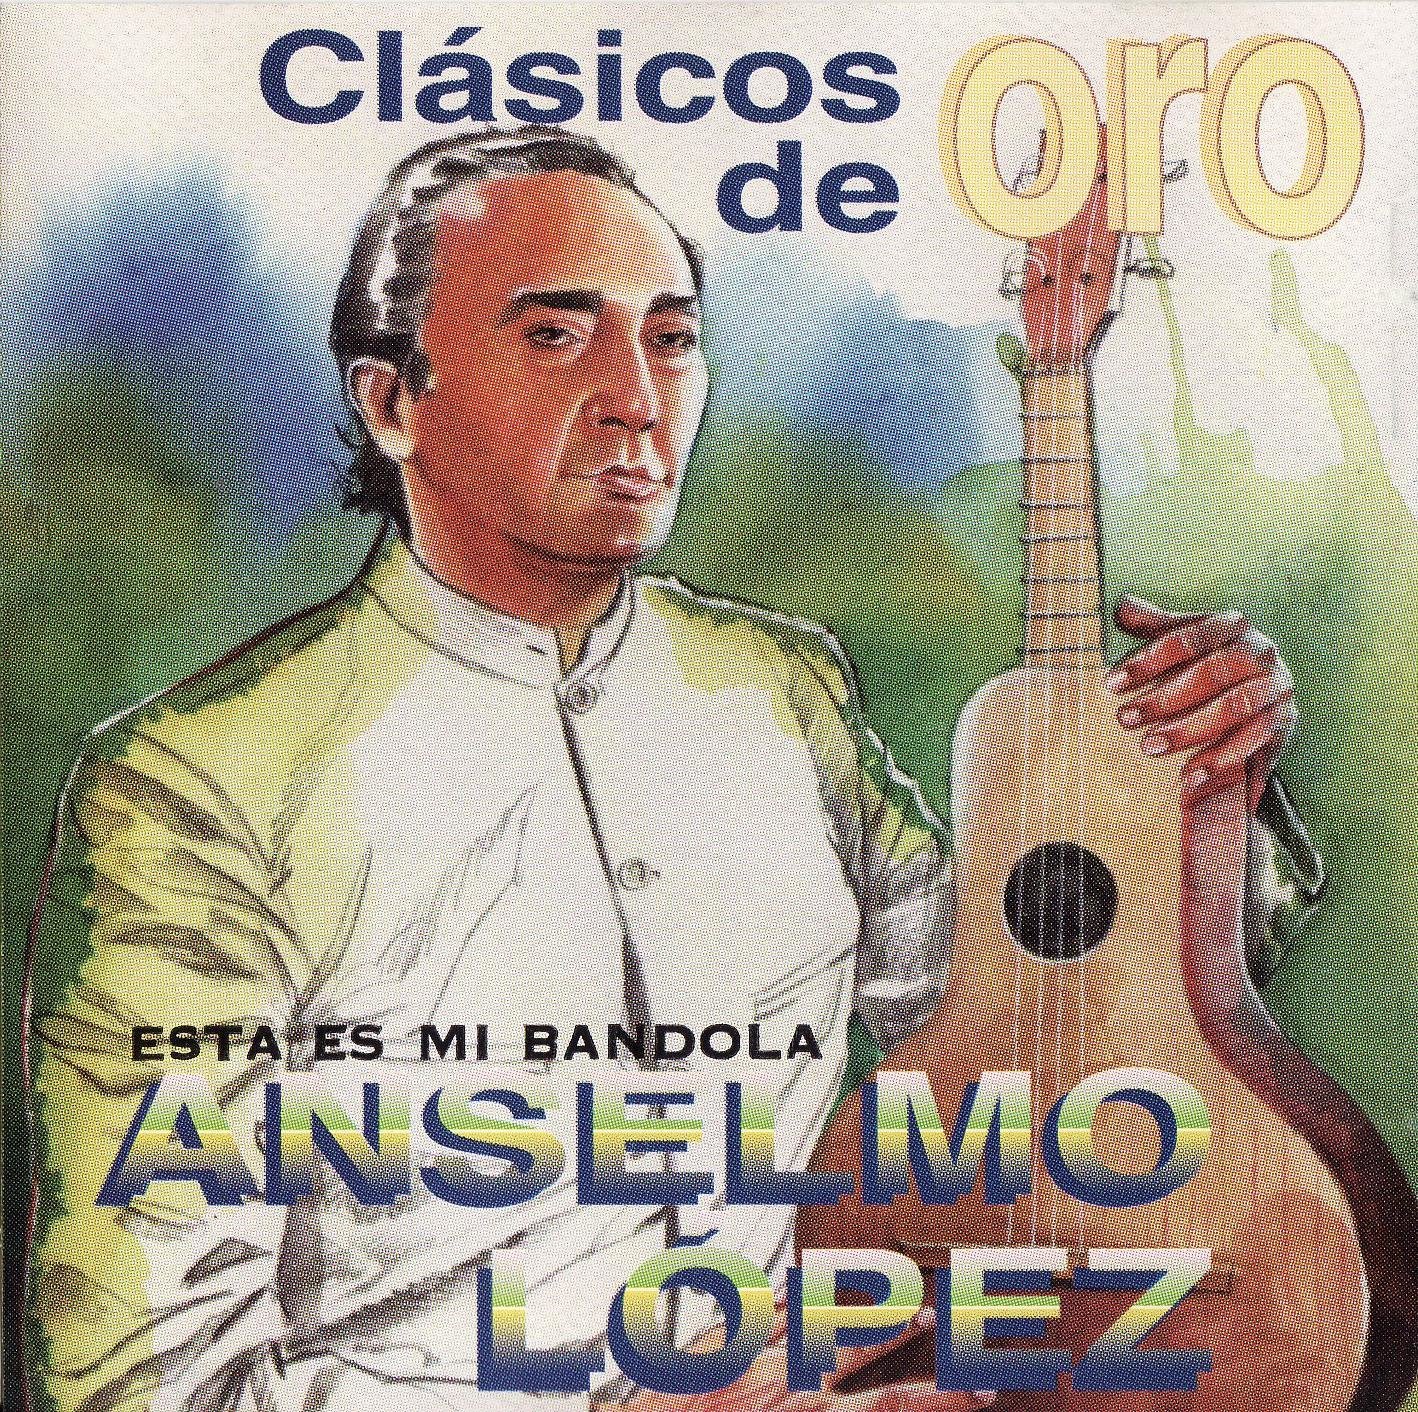 [Anselmo+Lopez+-+Clasicos+de+Oro.jpg]